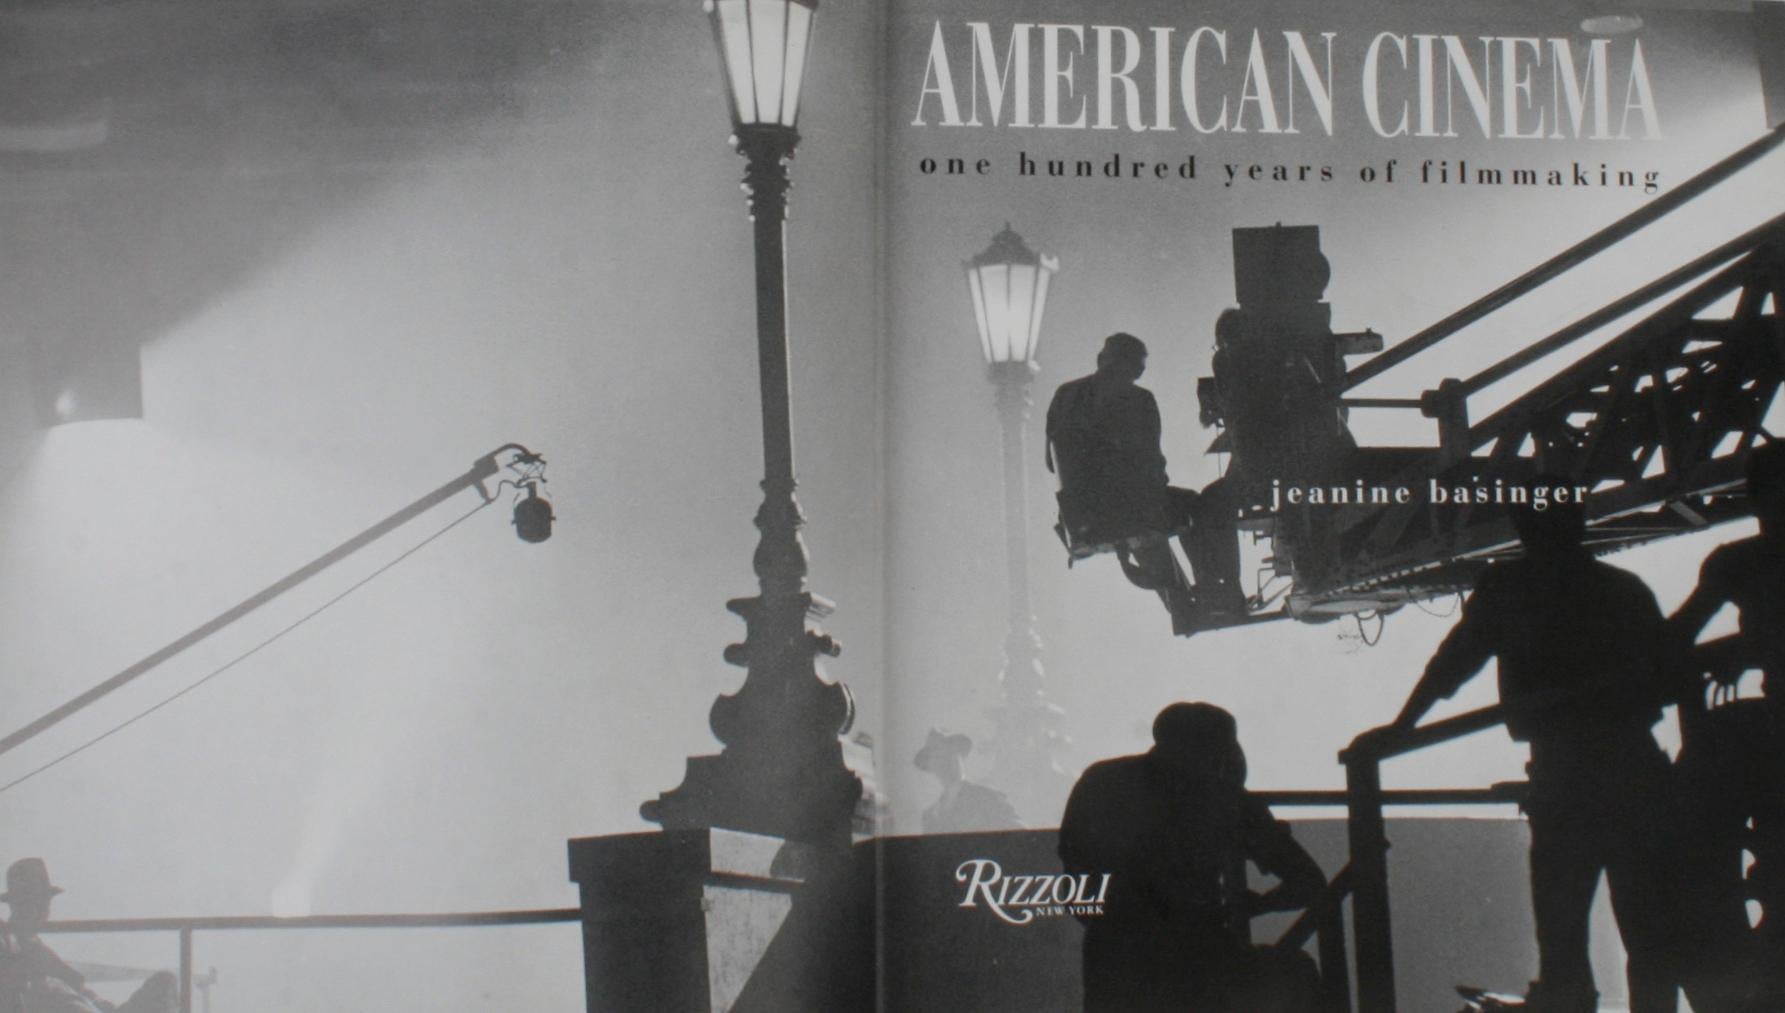 American Cinema, One Hundred Years of Filmmaking von Jeanie Basinger. New York: Rizzoli, 1994. 1st Ed Hardcover veröffentlicht, um die Hundertjahrfeier der Geburt des amerikanischen Films und eine 10-teilige PBS-TV-Serie, die im Januar 1995